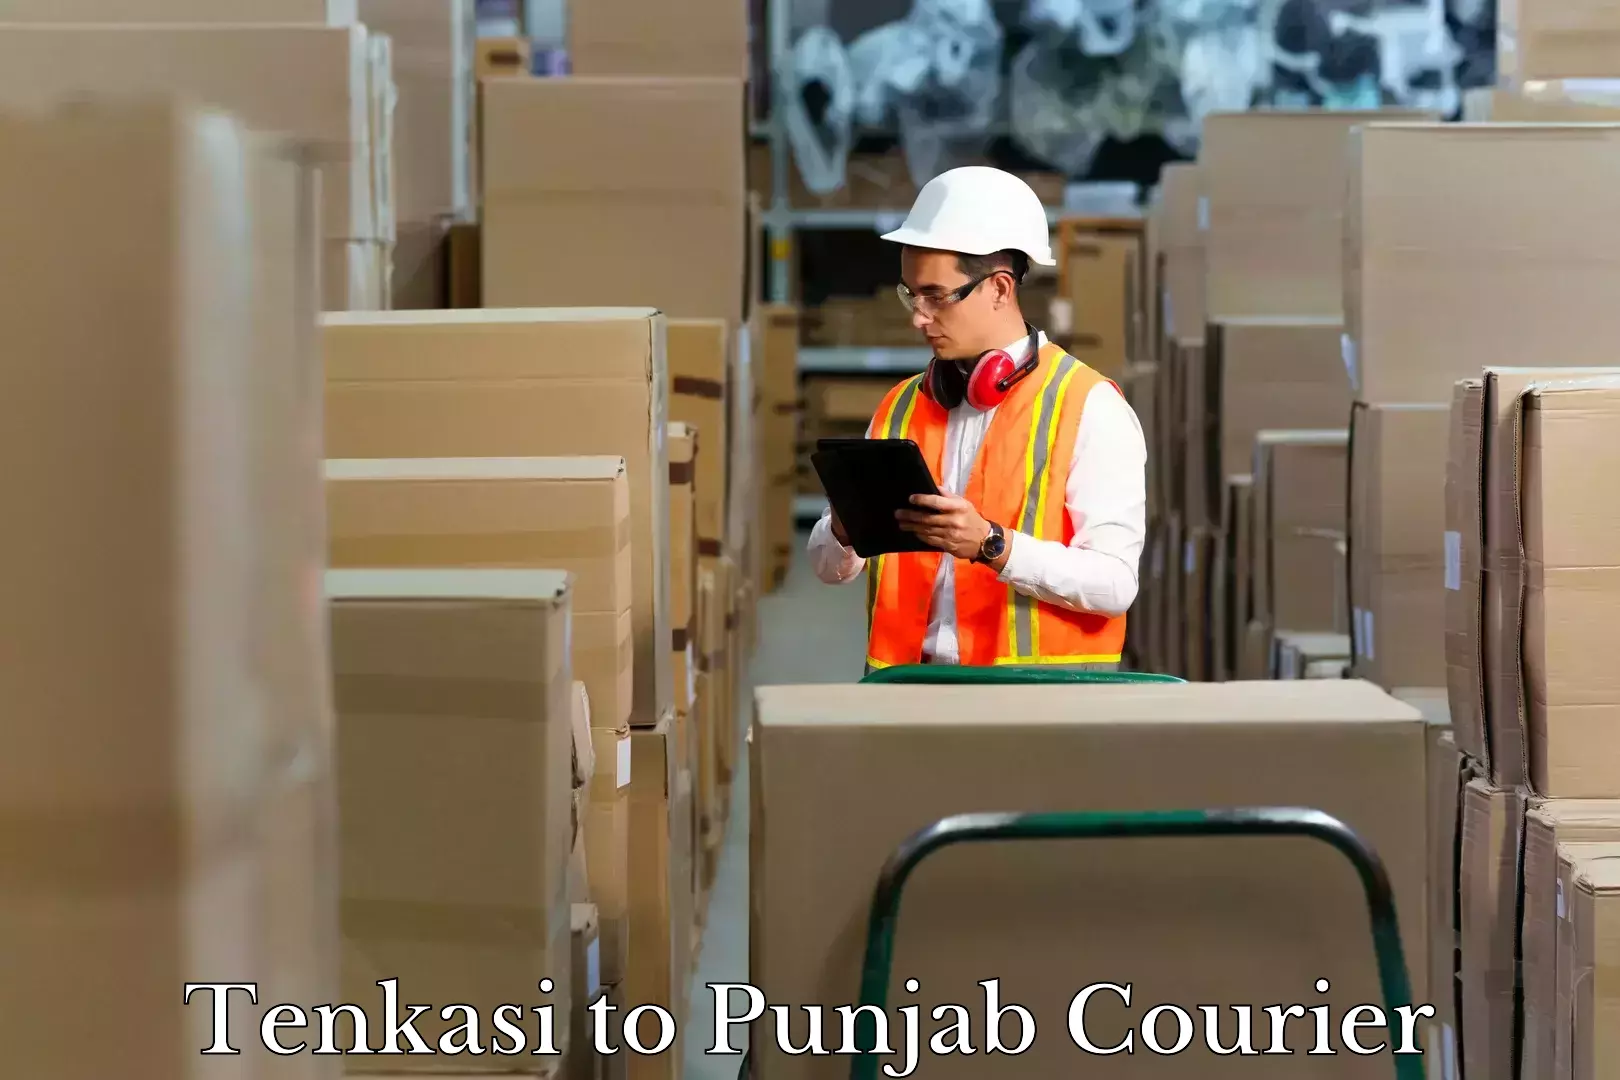 Luggage forwarding service Tenkasi to Punjab